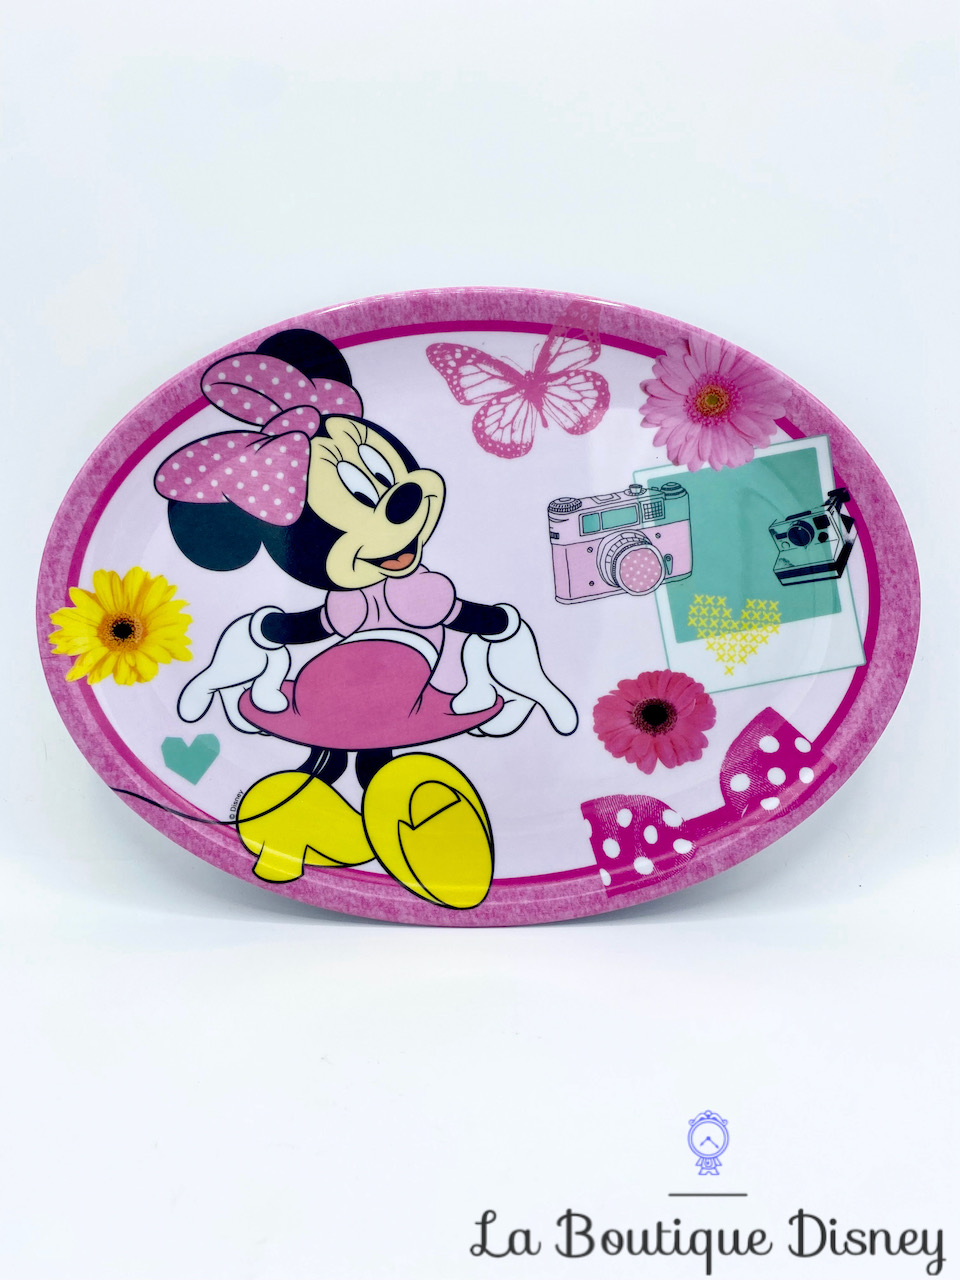 Assiette ovale Minnie Mouse Disney Trudeau plastique melamine rose appareil photo caméra